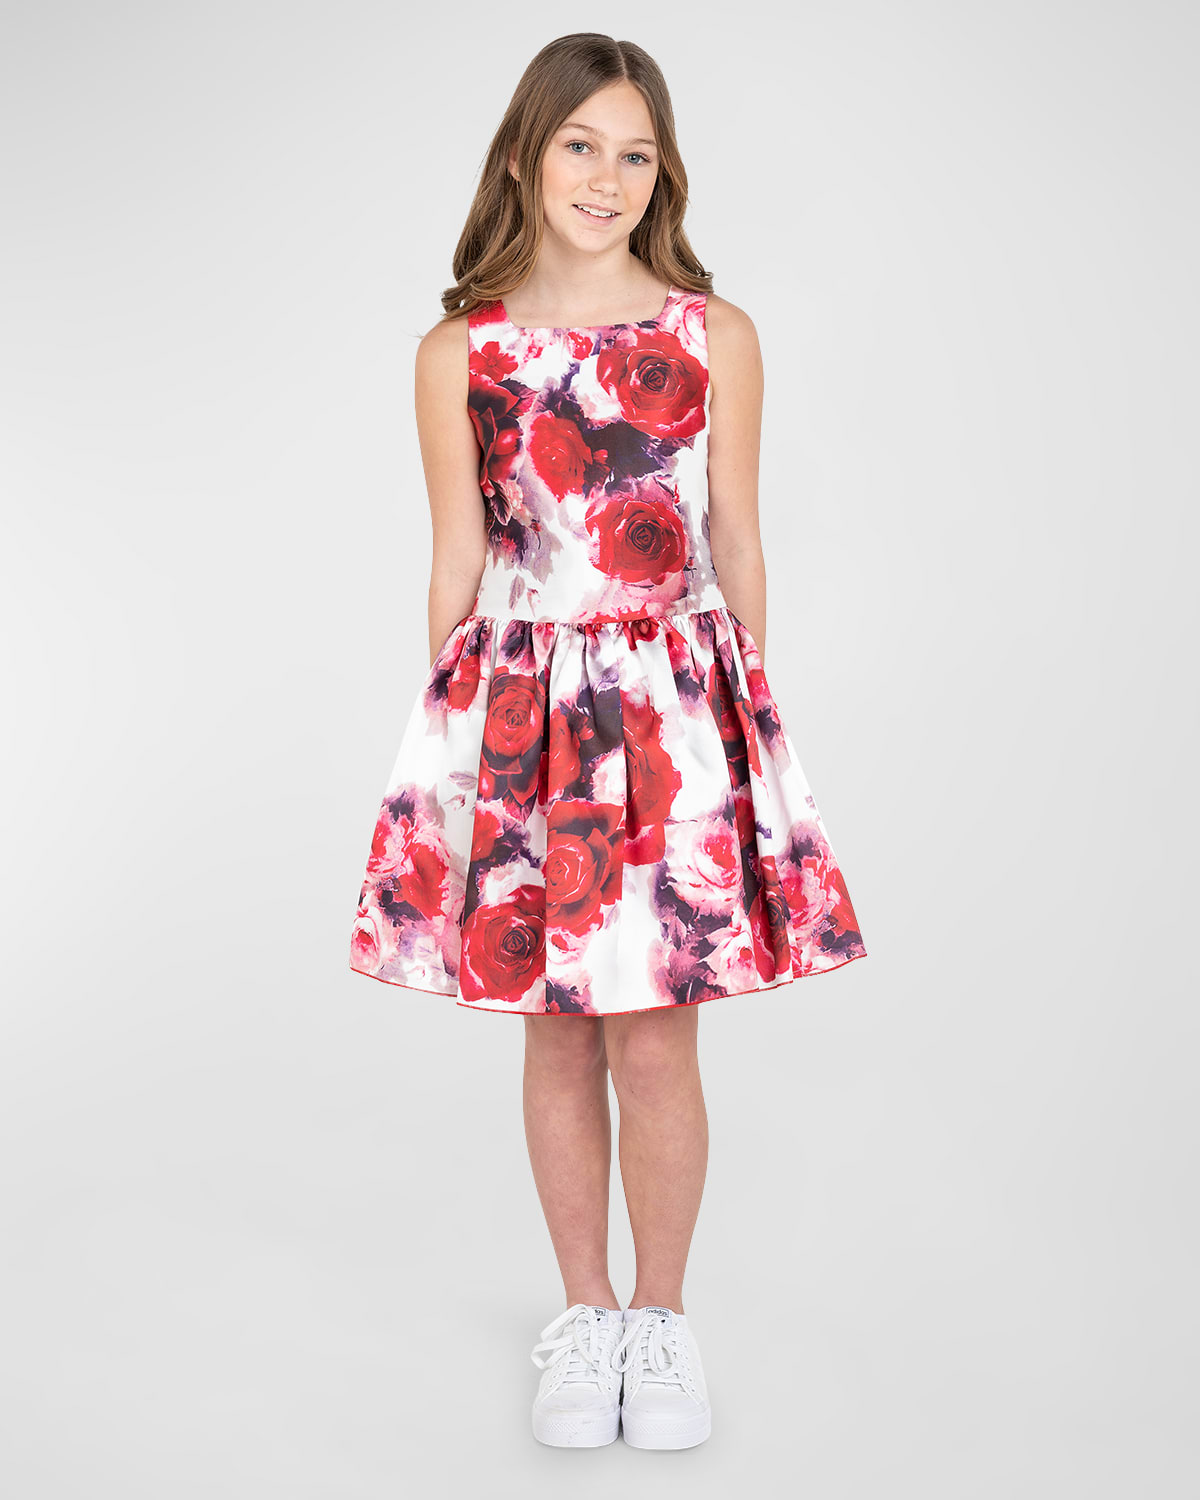 Zoe Kids' Girl's Alexandra Floral Brocade Dress In Multi